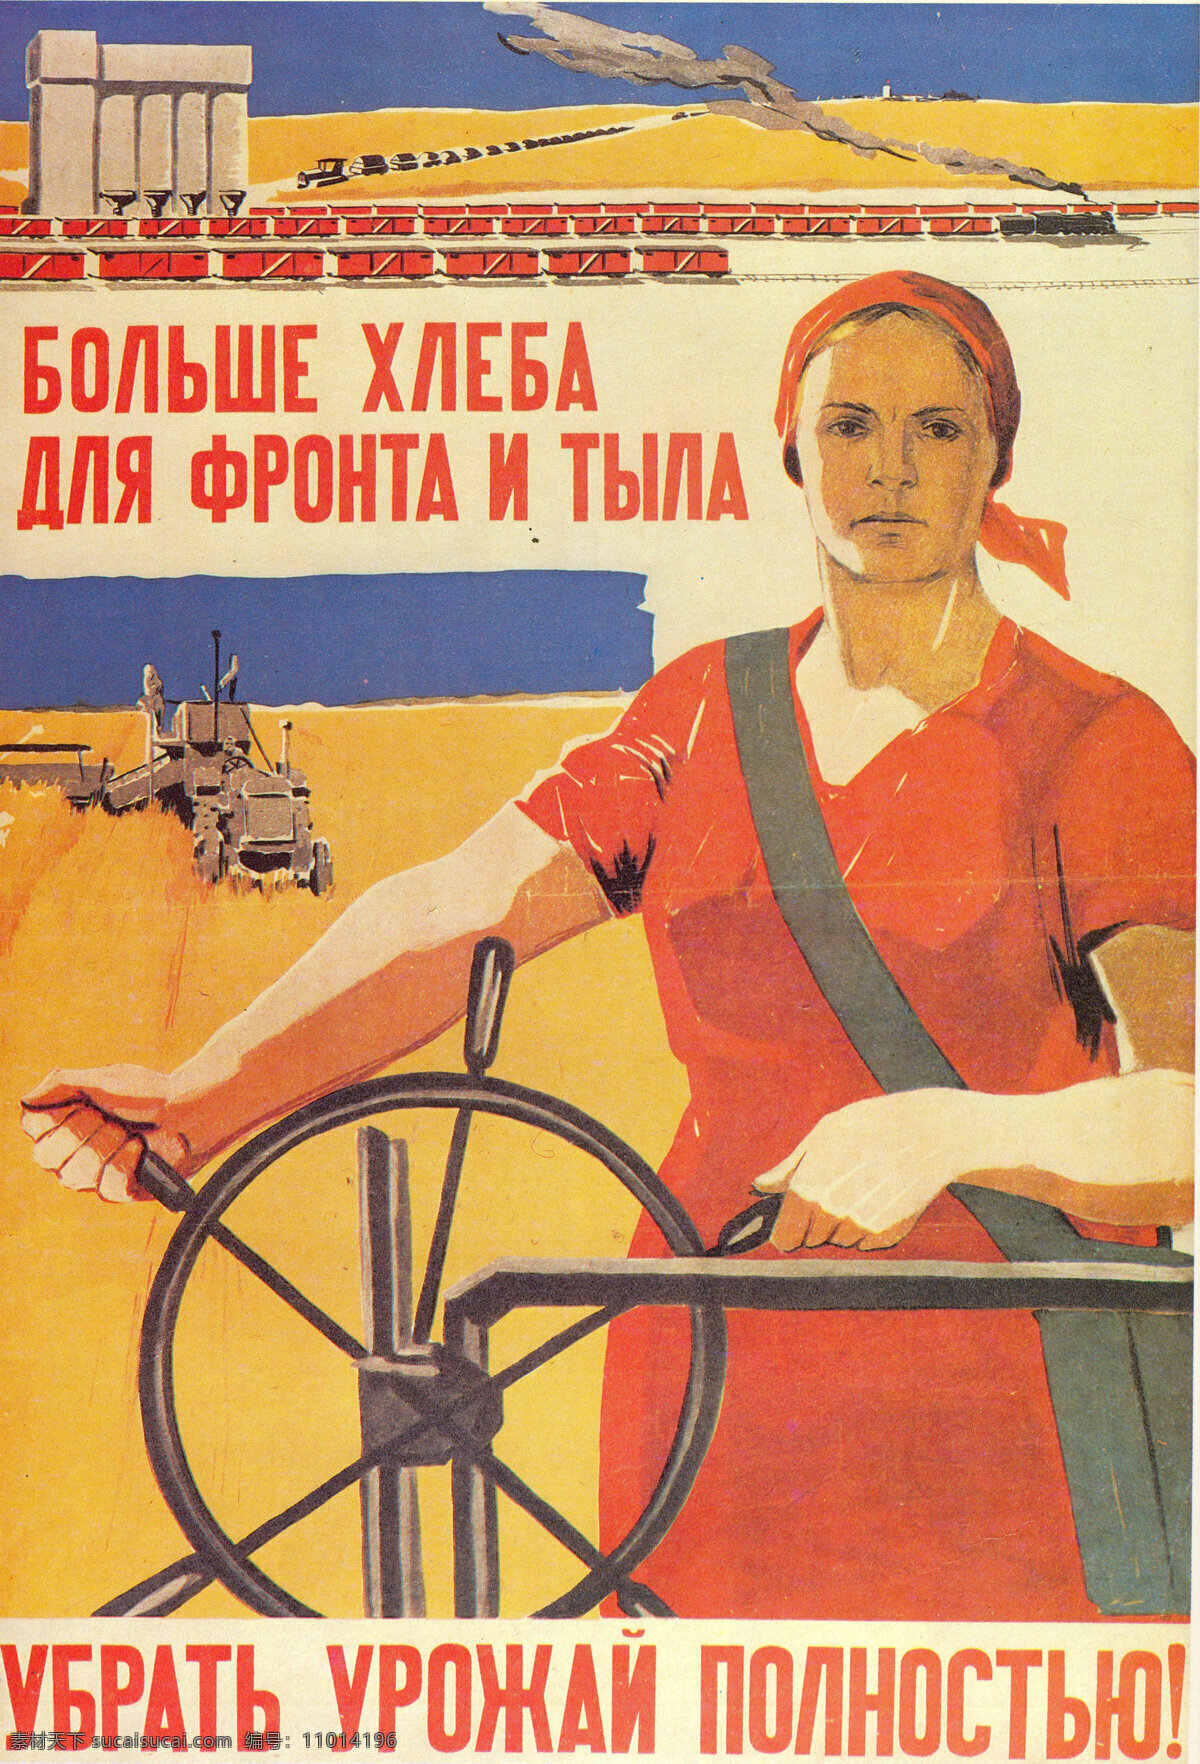 绘画书法 文化艺术 宣传海报 宣传画 反 法西斯 设计素材 模板下载 苏联 时期 宣传单 彩页 dm